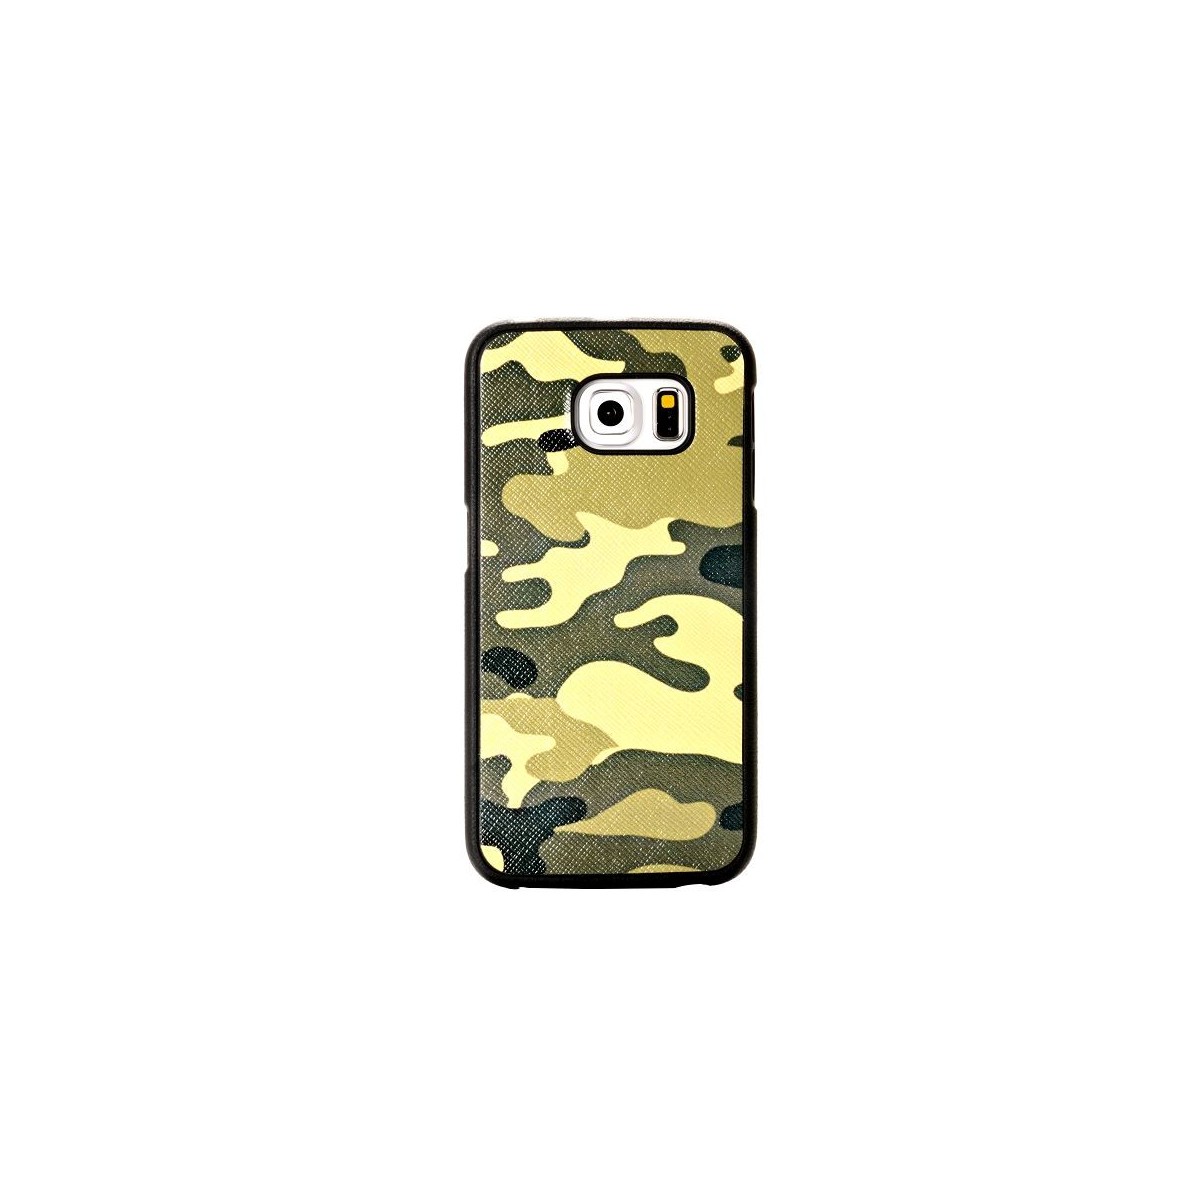 Crazy Kase - Coque Galaxy S6 Edge motif Camouflage